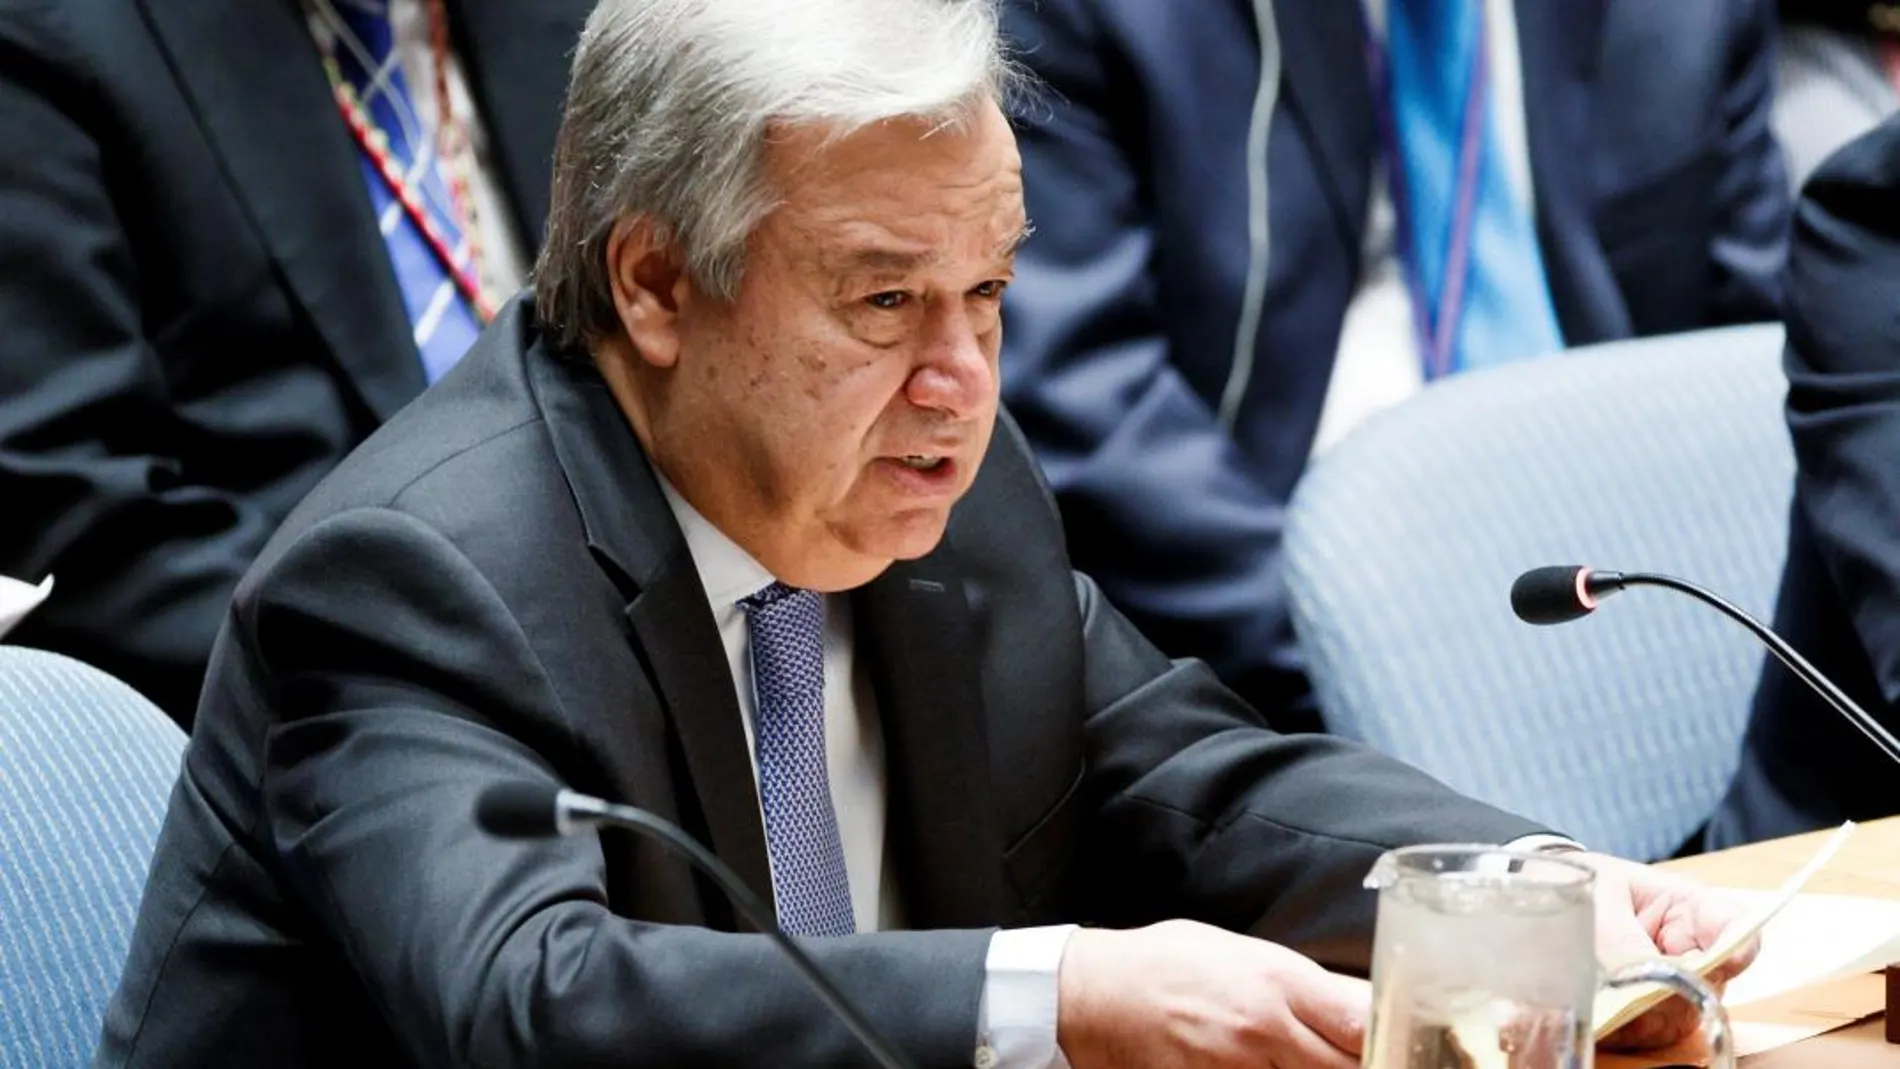 El secretario general de las Naciones Unidas, Antonio Guterres (c), interviene en el Consejo de Seguridad de la ONU. EFE/ Justin Lane